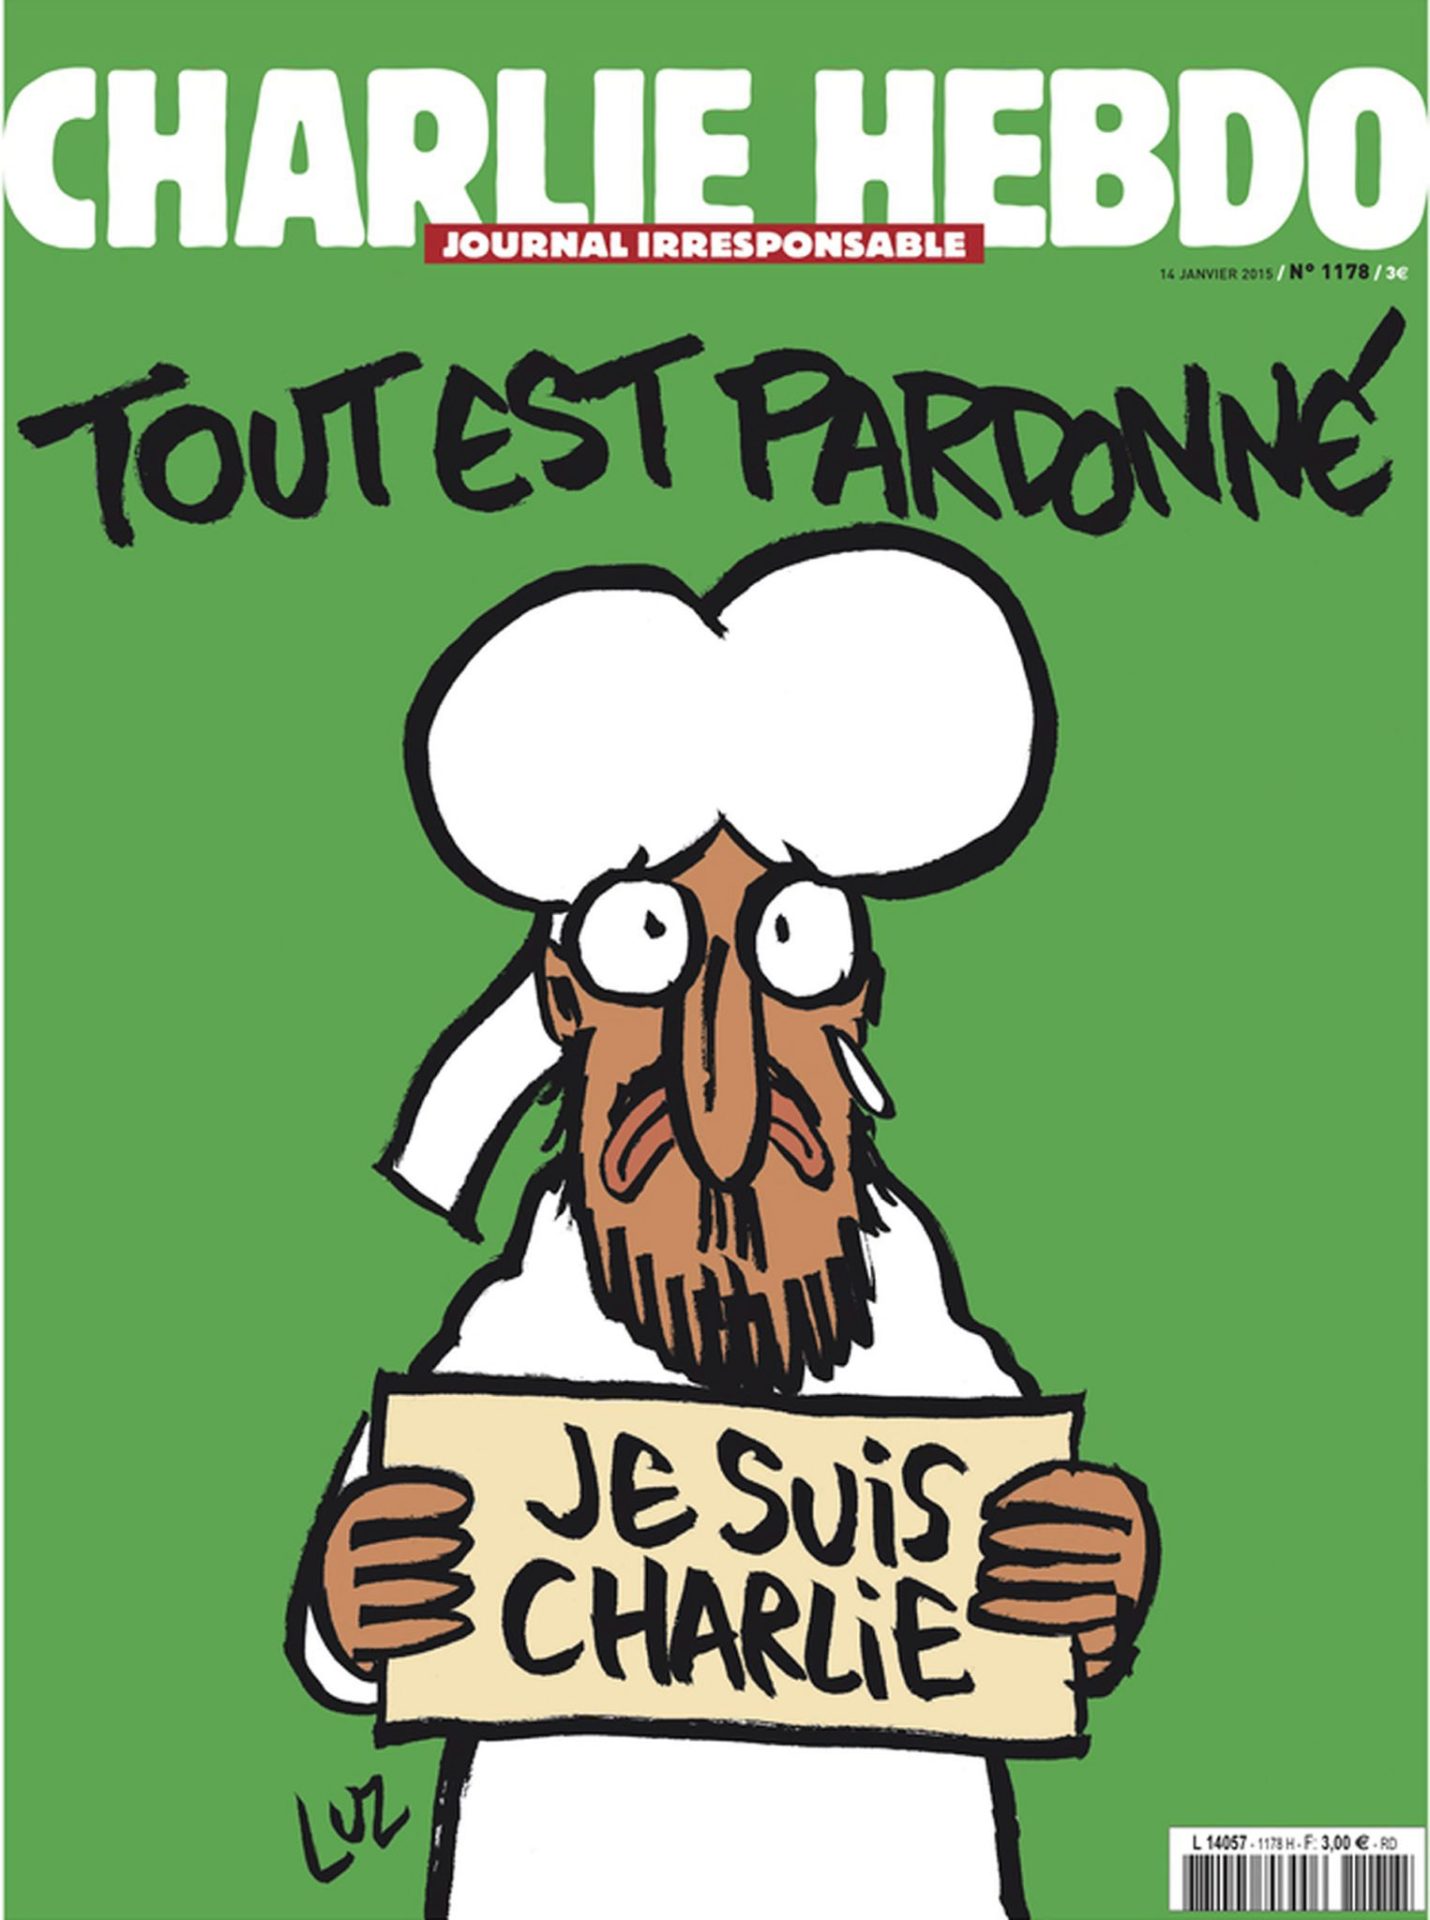 Seis escritores contra prémio ao Charlie Hebdo